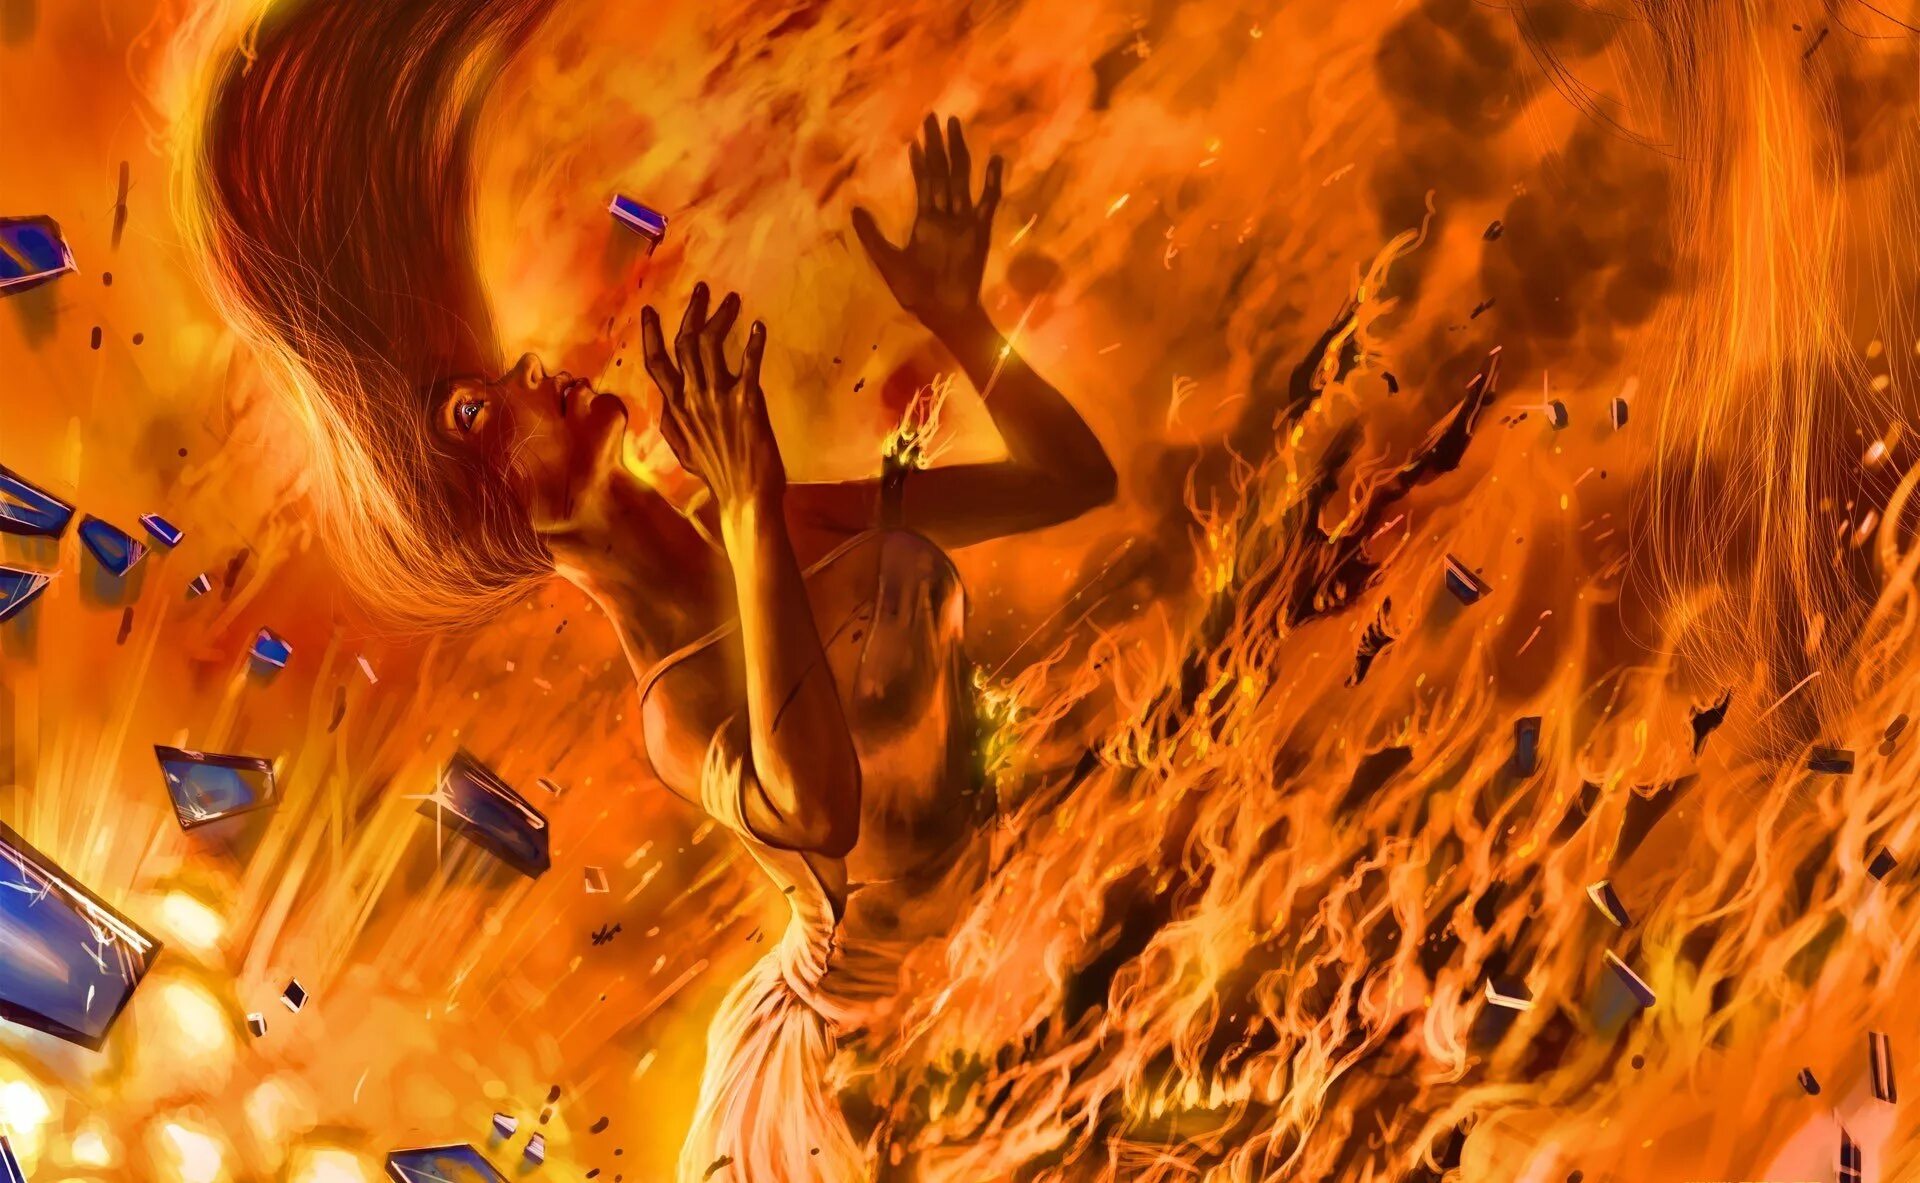 Мили сгорают. Девушка горит в огне. Огненная девушка. Девушка в огне арт. Огненный человек.